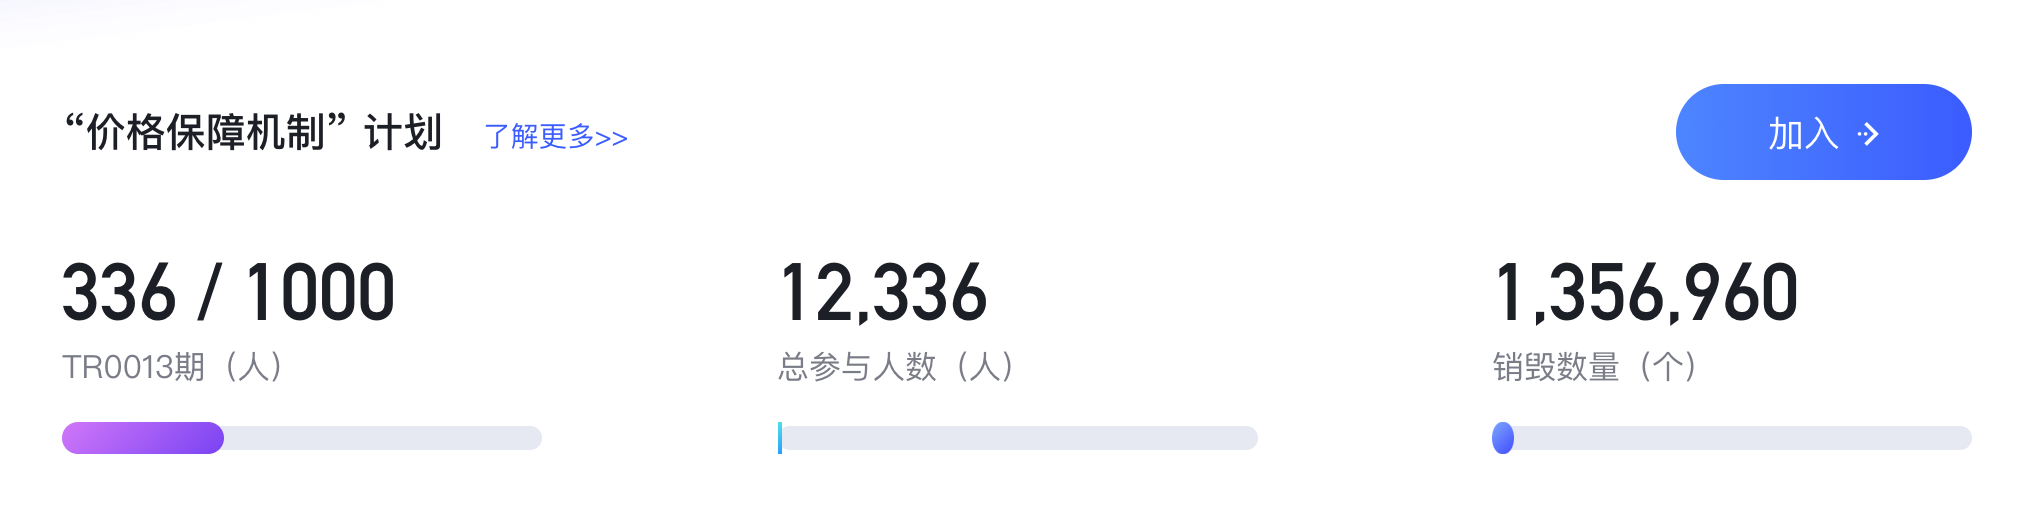 5.25快讯配图.png